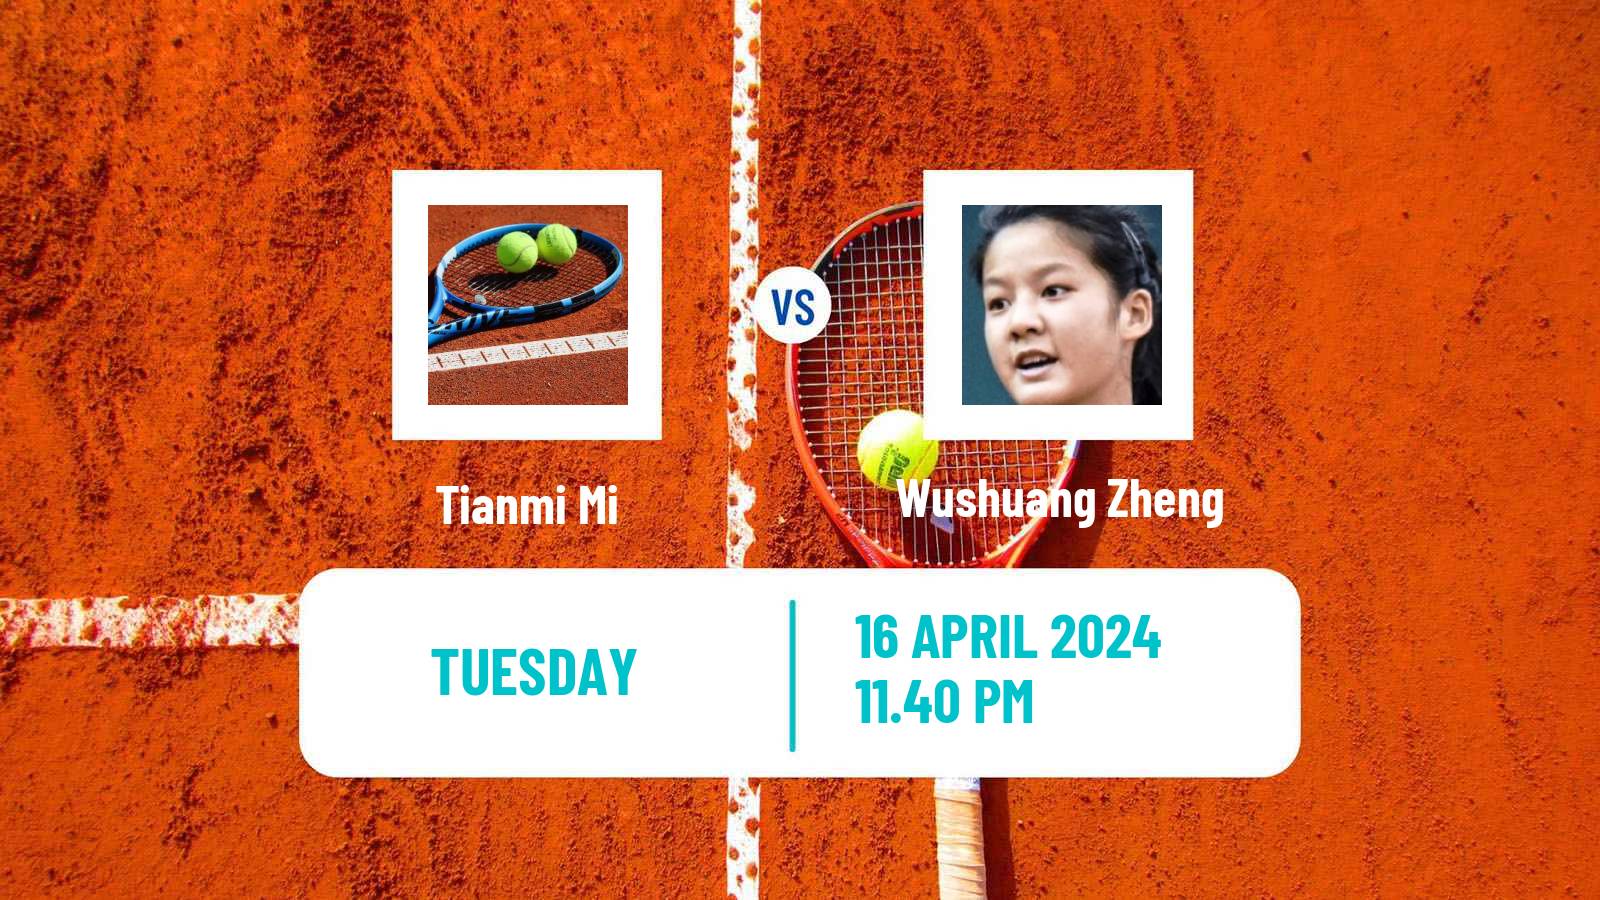 Tennis ITF W50 Shenzhen 2 Women Tianmi Mi - Wushuang Zheng